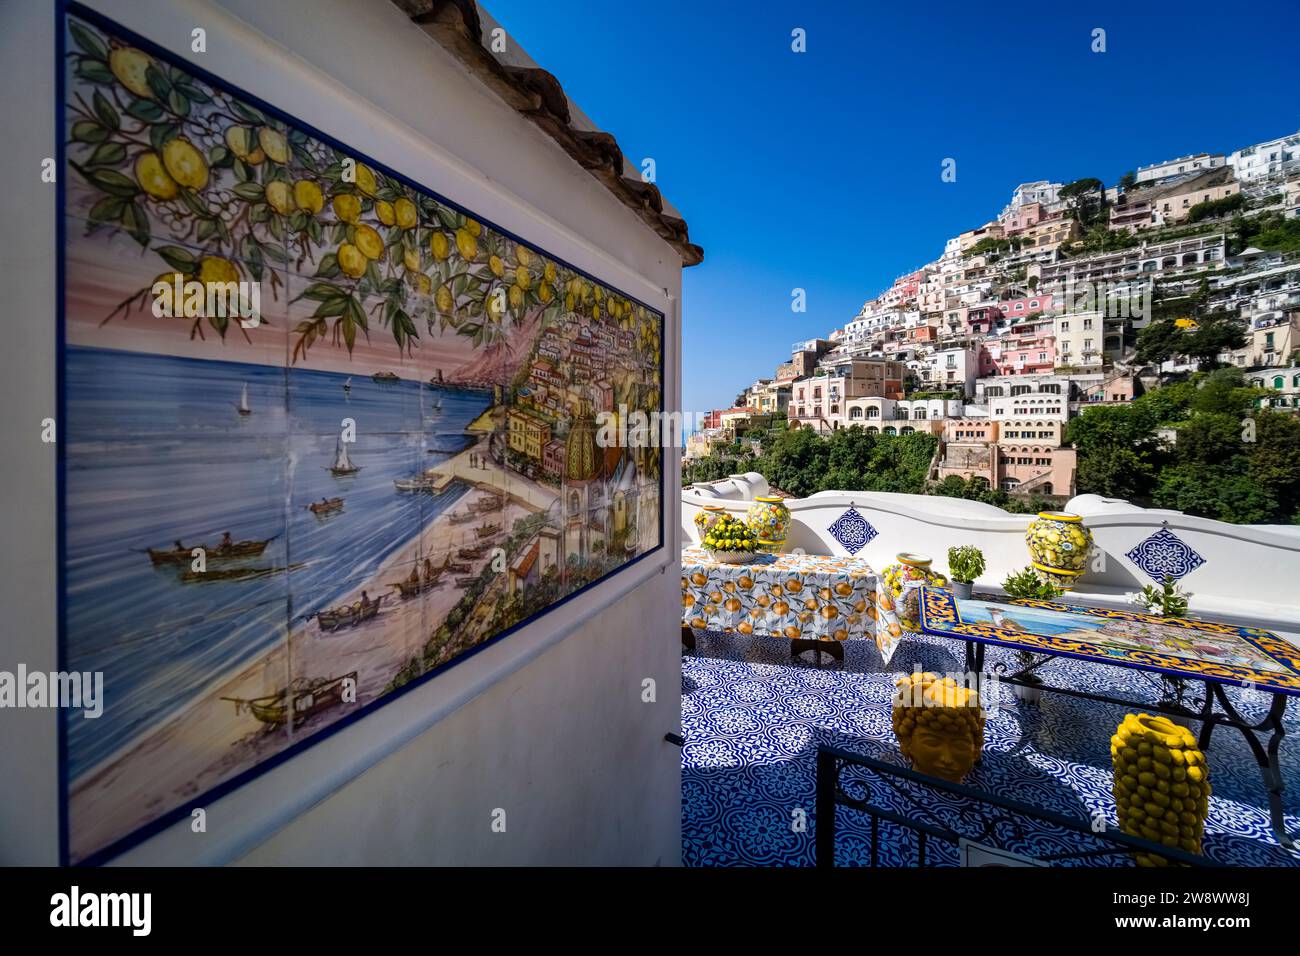 Des œuvres d'art en céramique colorées sont vendues à Positano, sur la côte amalfitaine, située sur une colline surplombant la mer Méditerranée. Banque D'Images